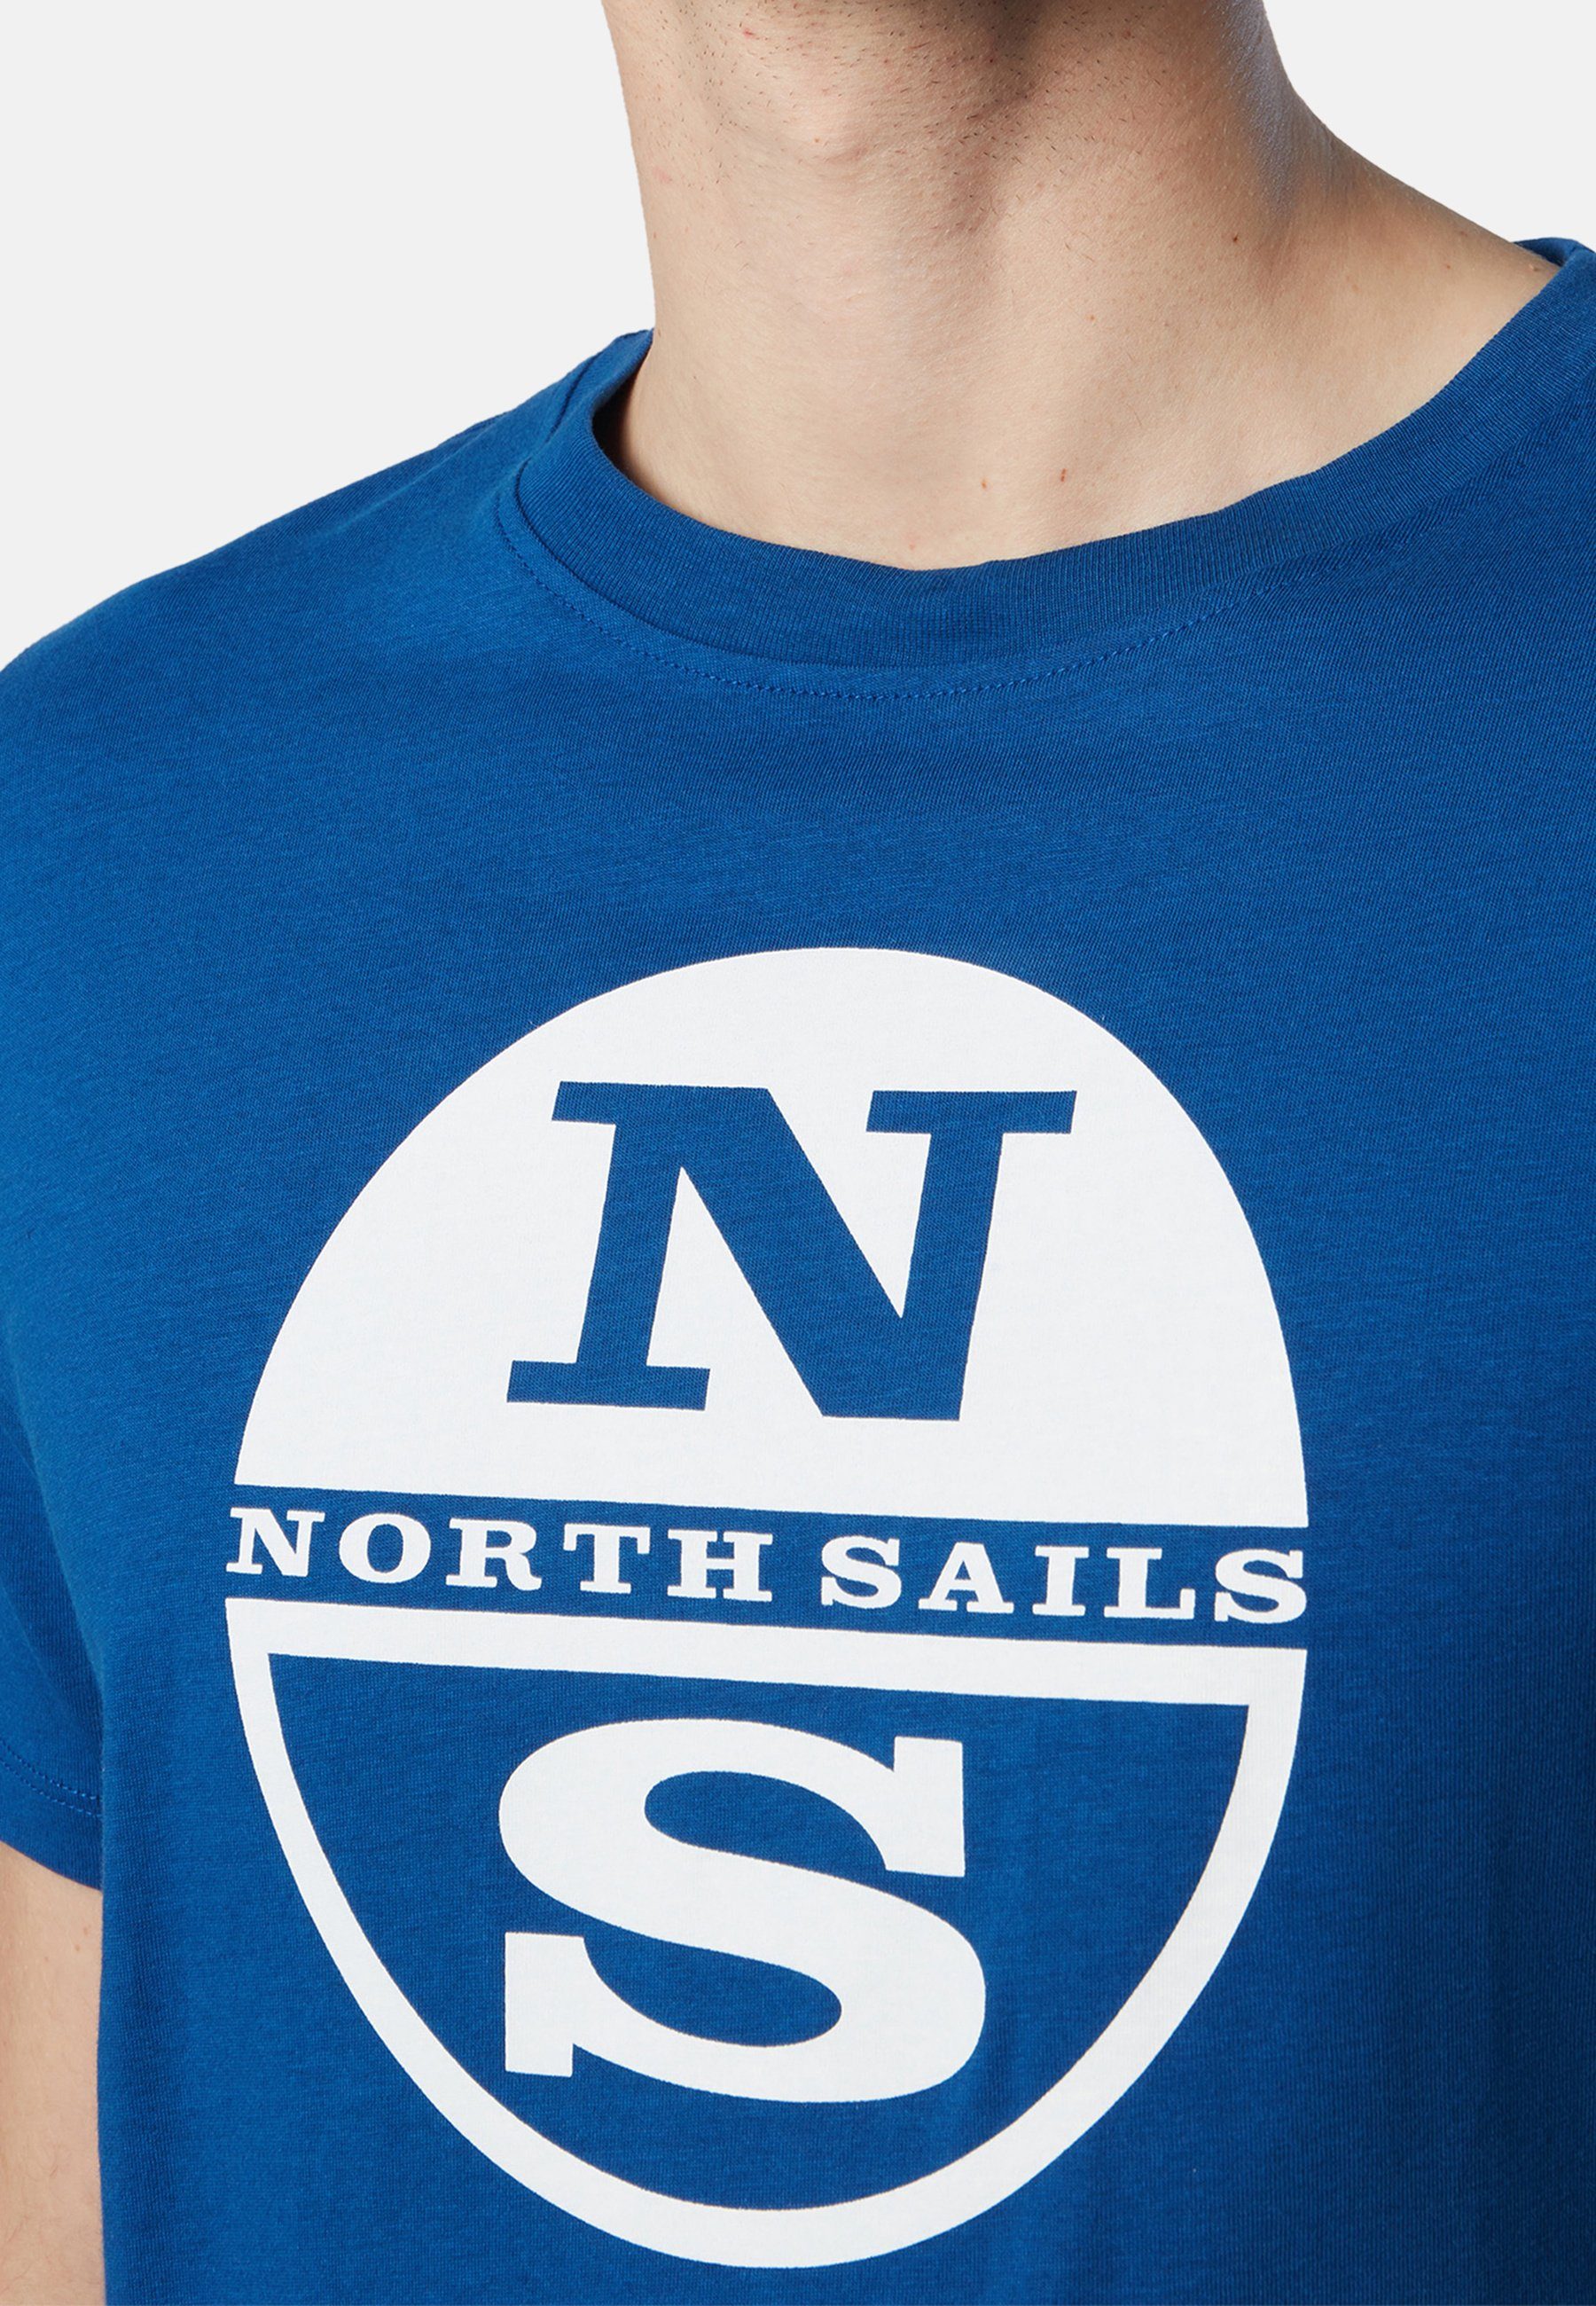 Maxi-Logo-Aufdruck BRIGHT mit T-Shirt klassischem North T-Shirt BLUE Design mit Sails